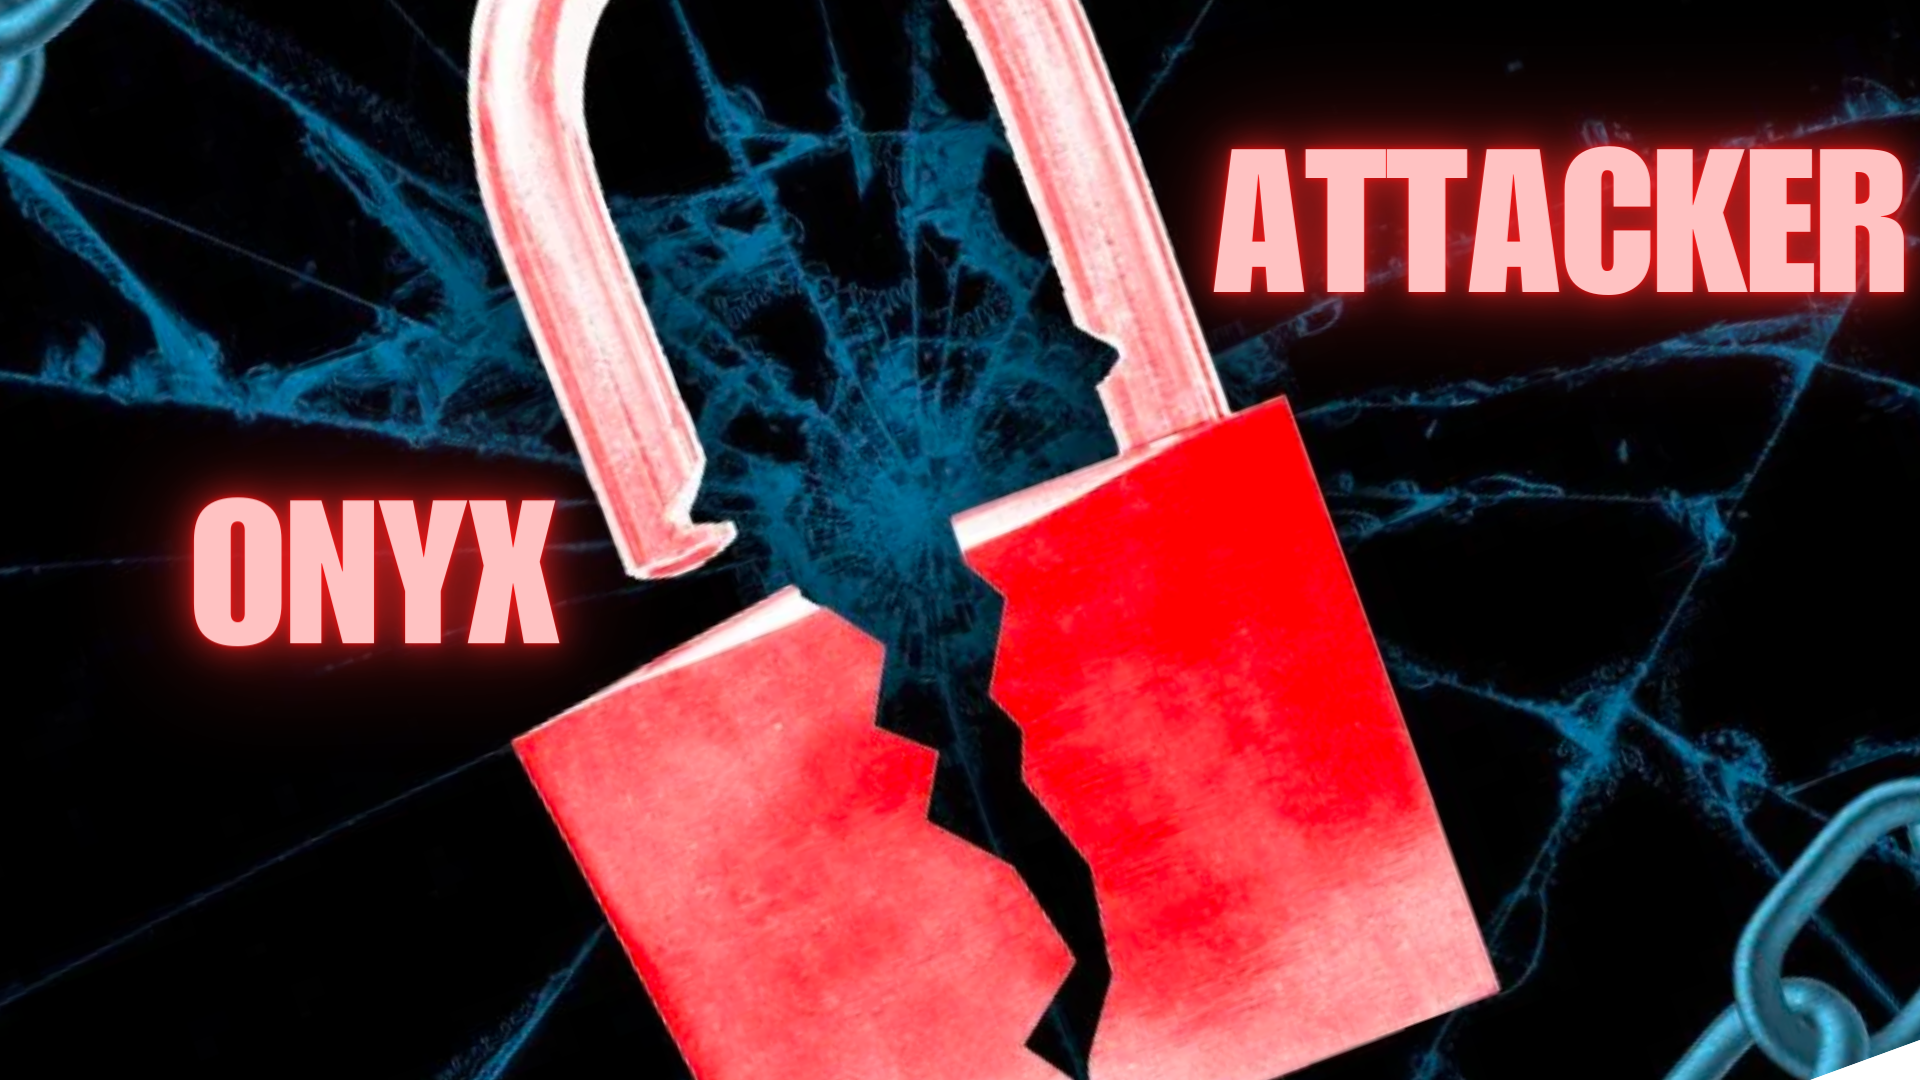 Giao thức tài chính phi tập trung Onyx bị Hack, dẫn đến thiệt hại hơn 2,1 triệu USD.